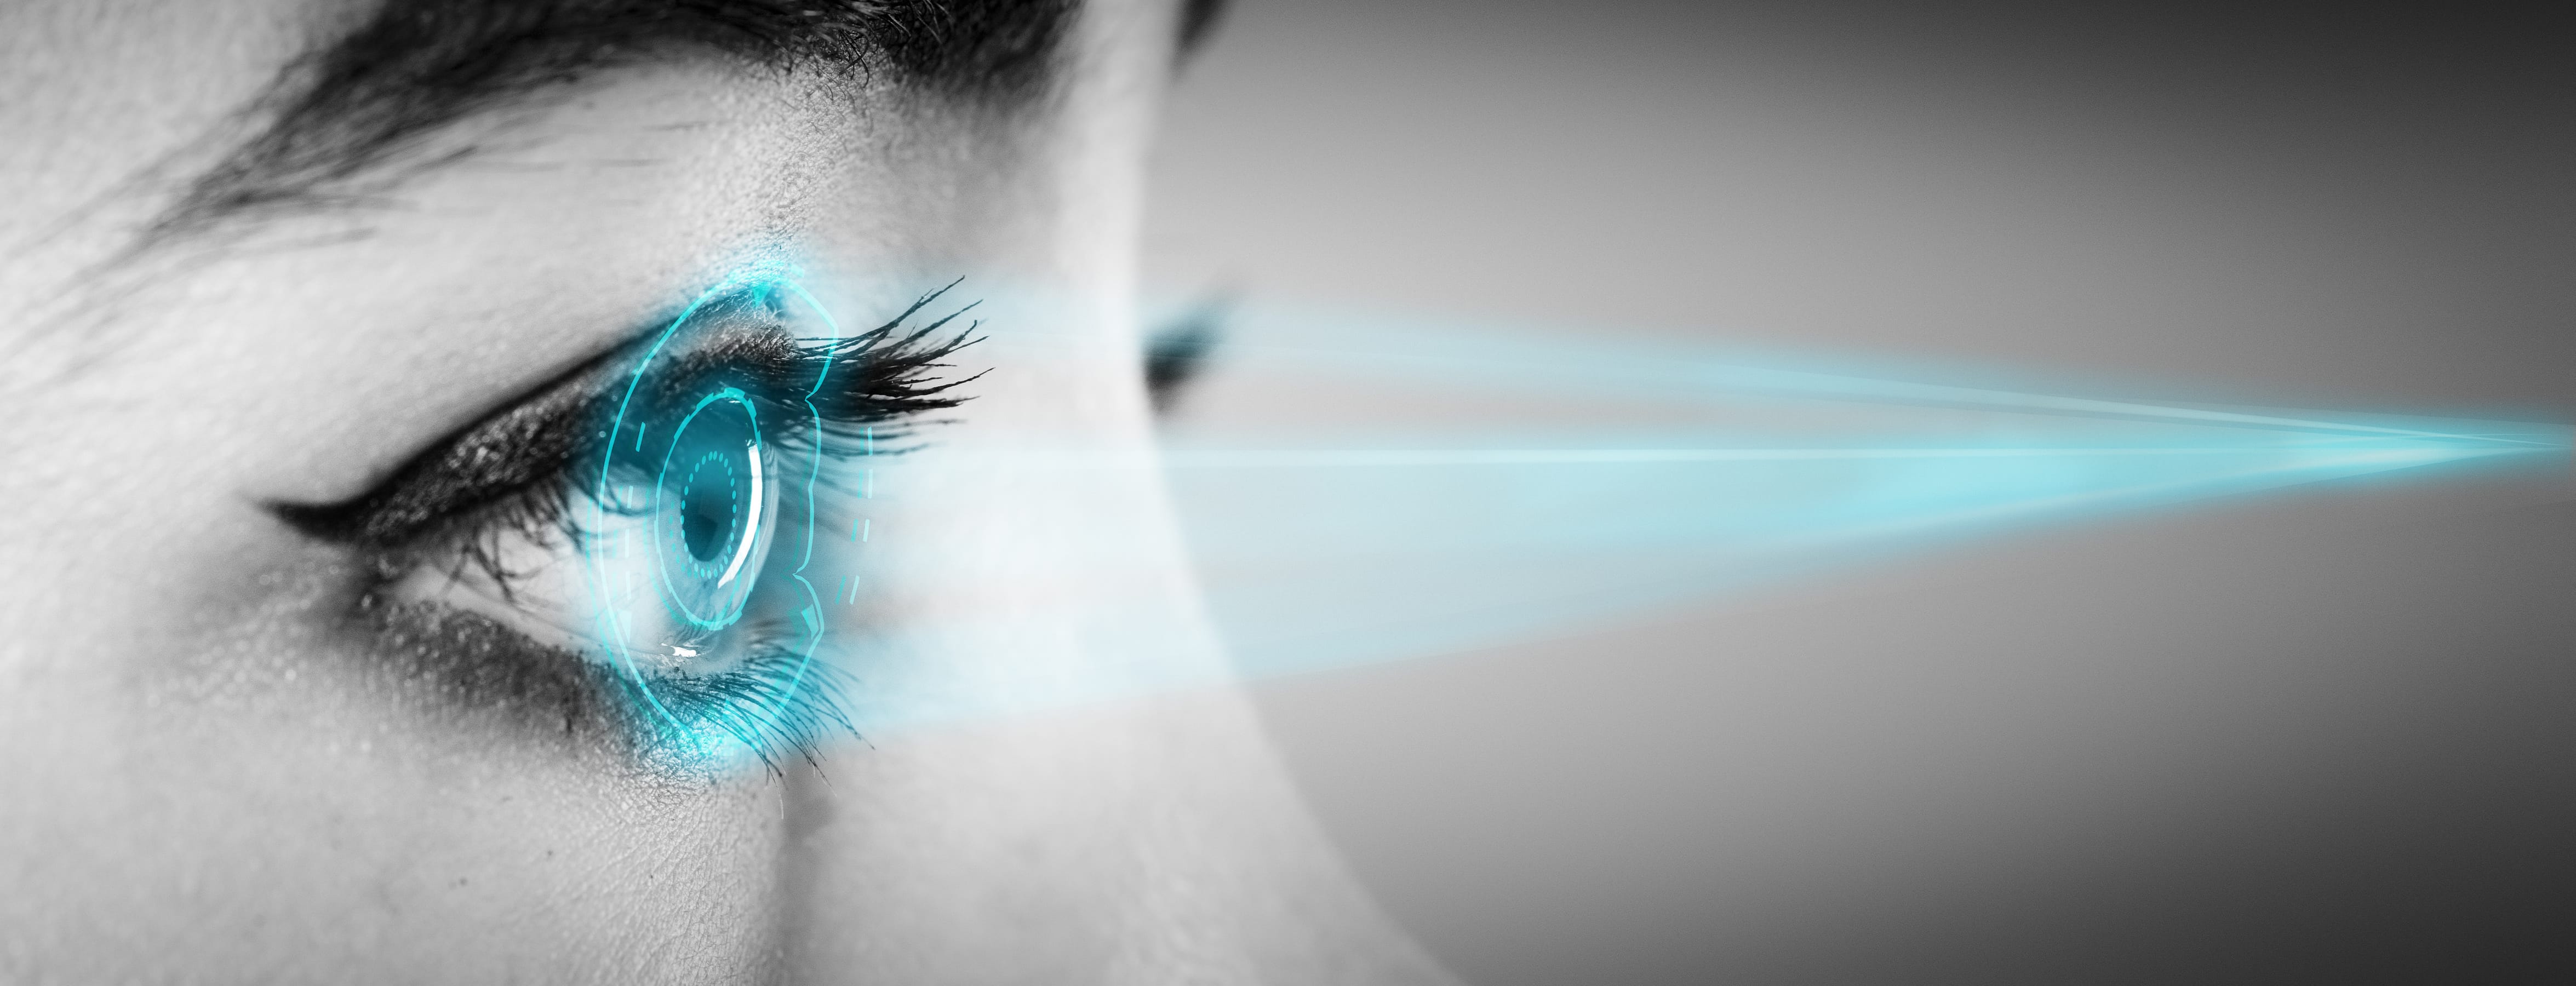 LED eye – the explained | uvex safety